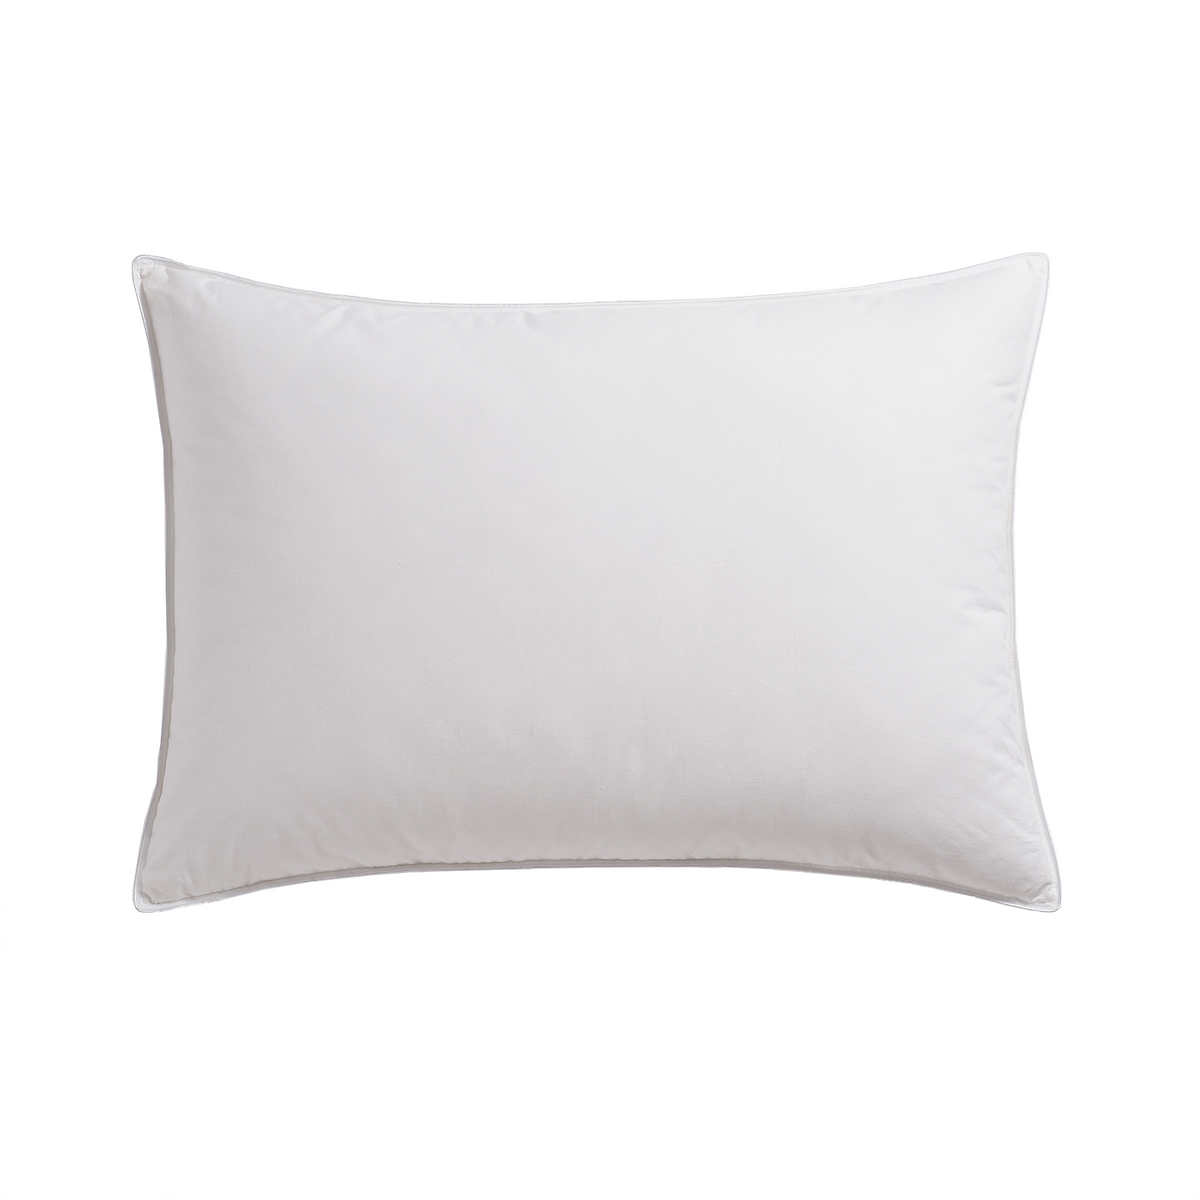 Whitex Feather Pillow Standard 20" x 26" 33 oz.